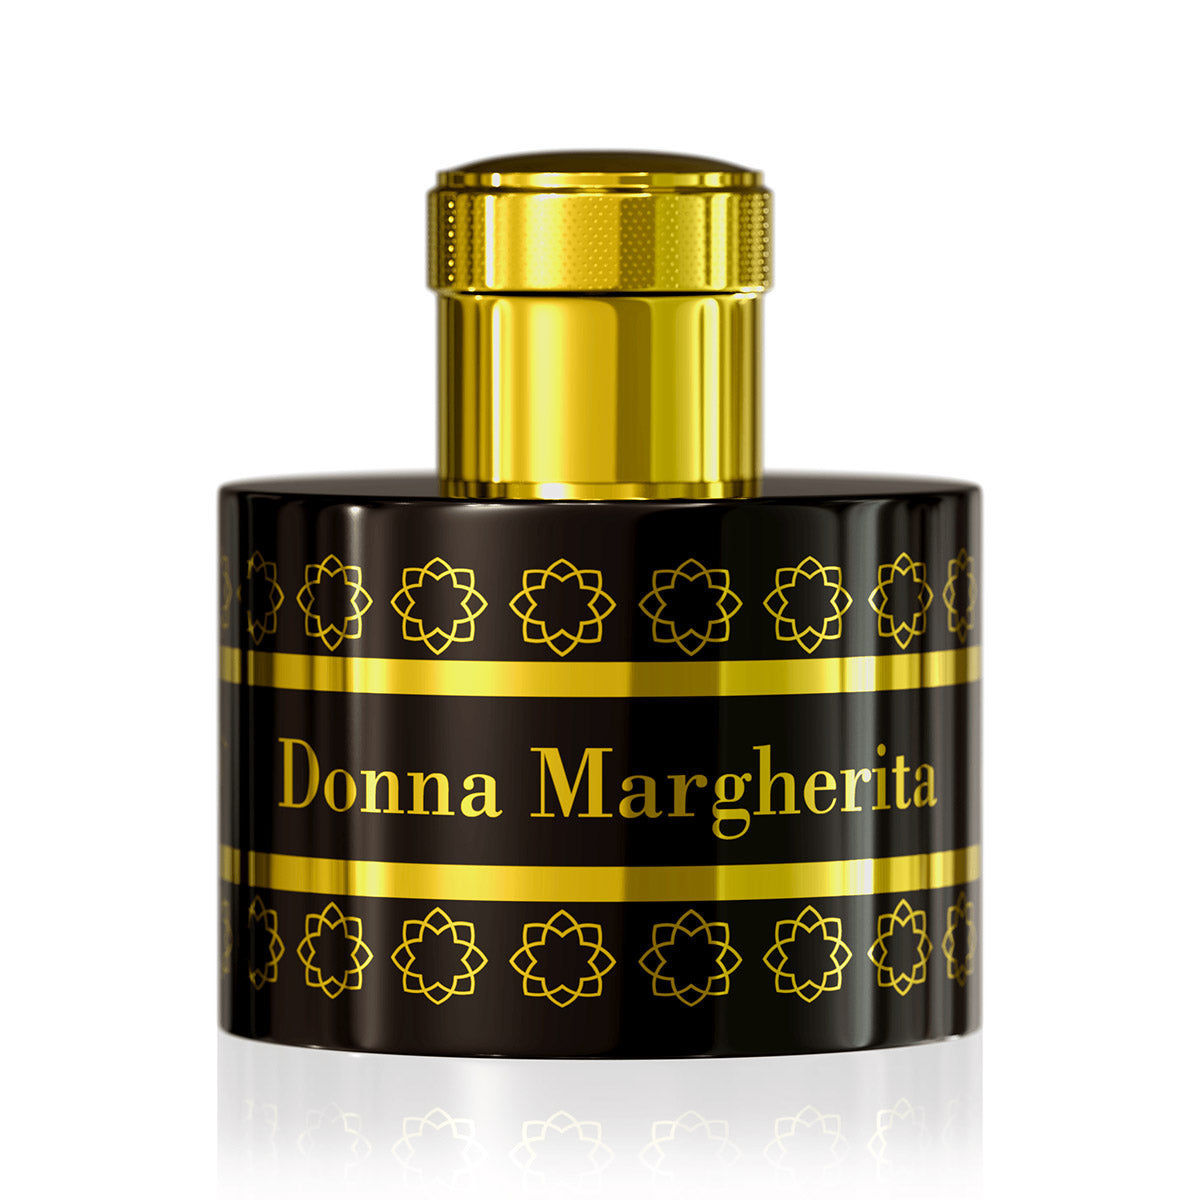 Donna Margherita - Pantheon Roma - EP 100ml